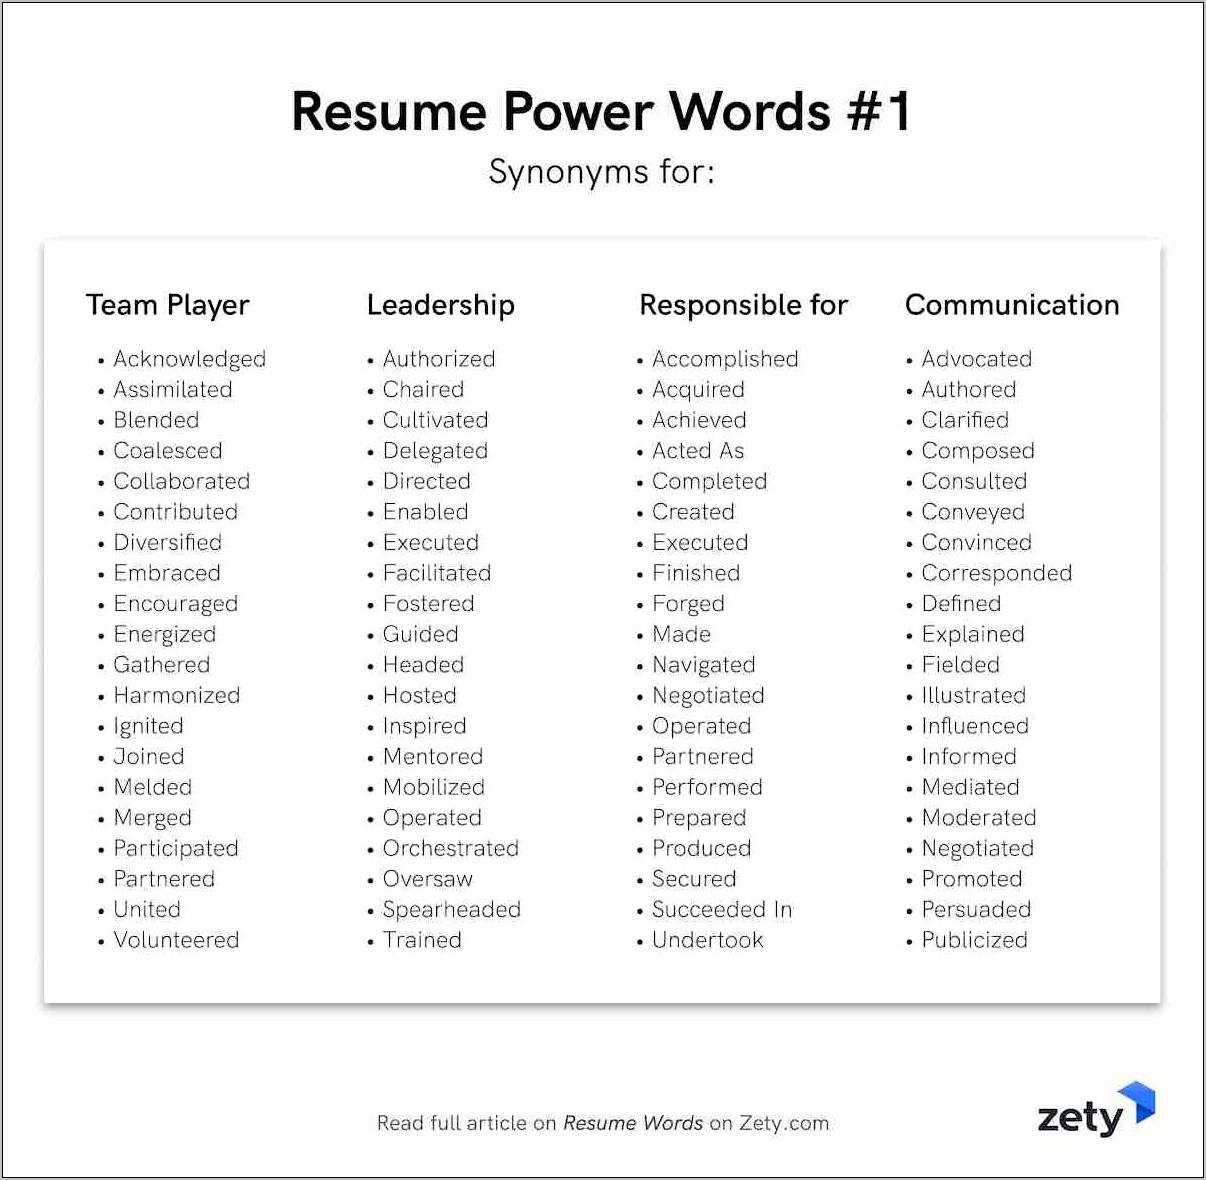 Best Keywords For A Resume